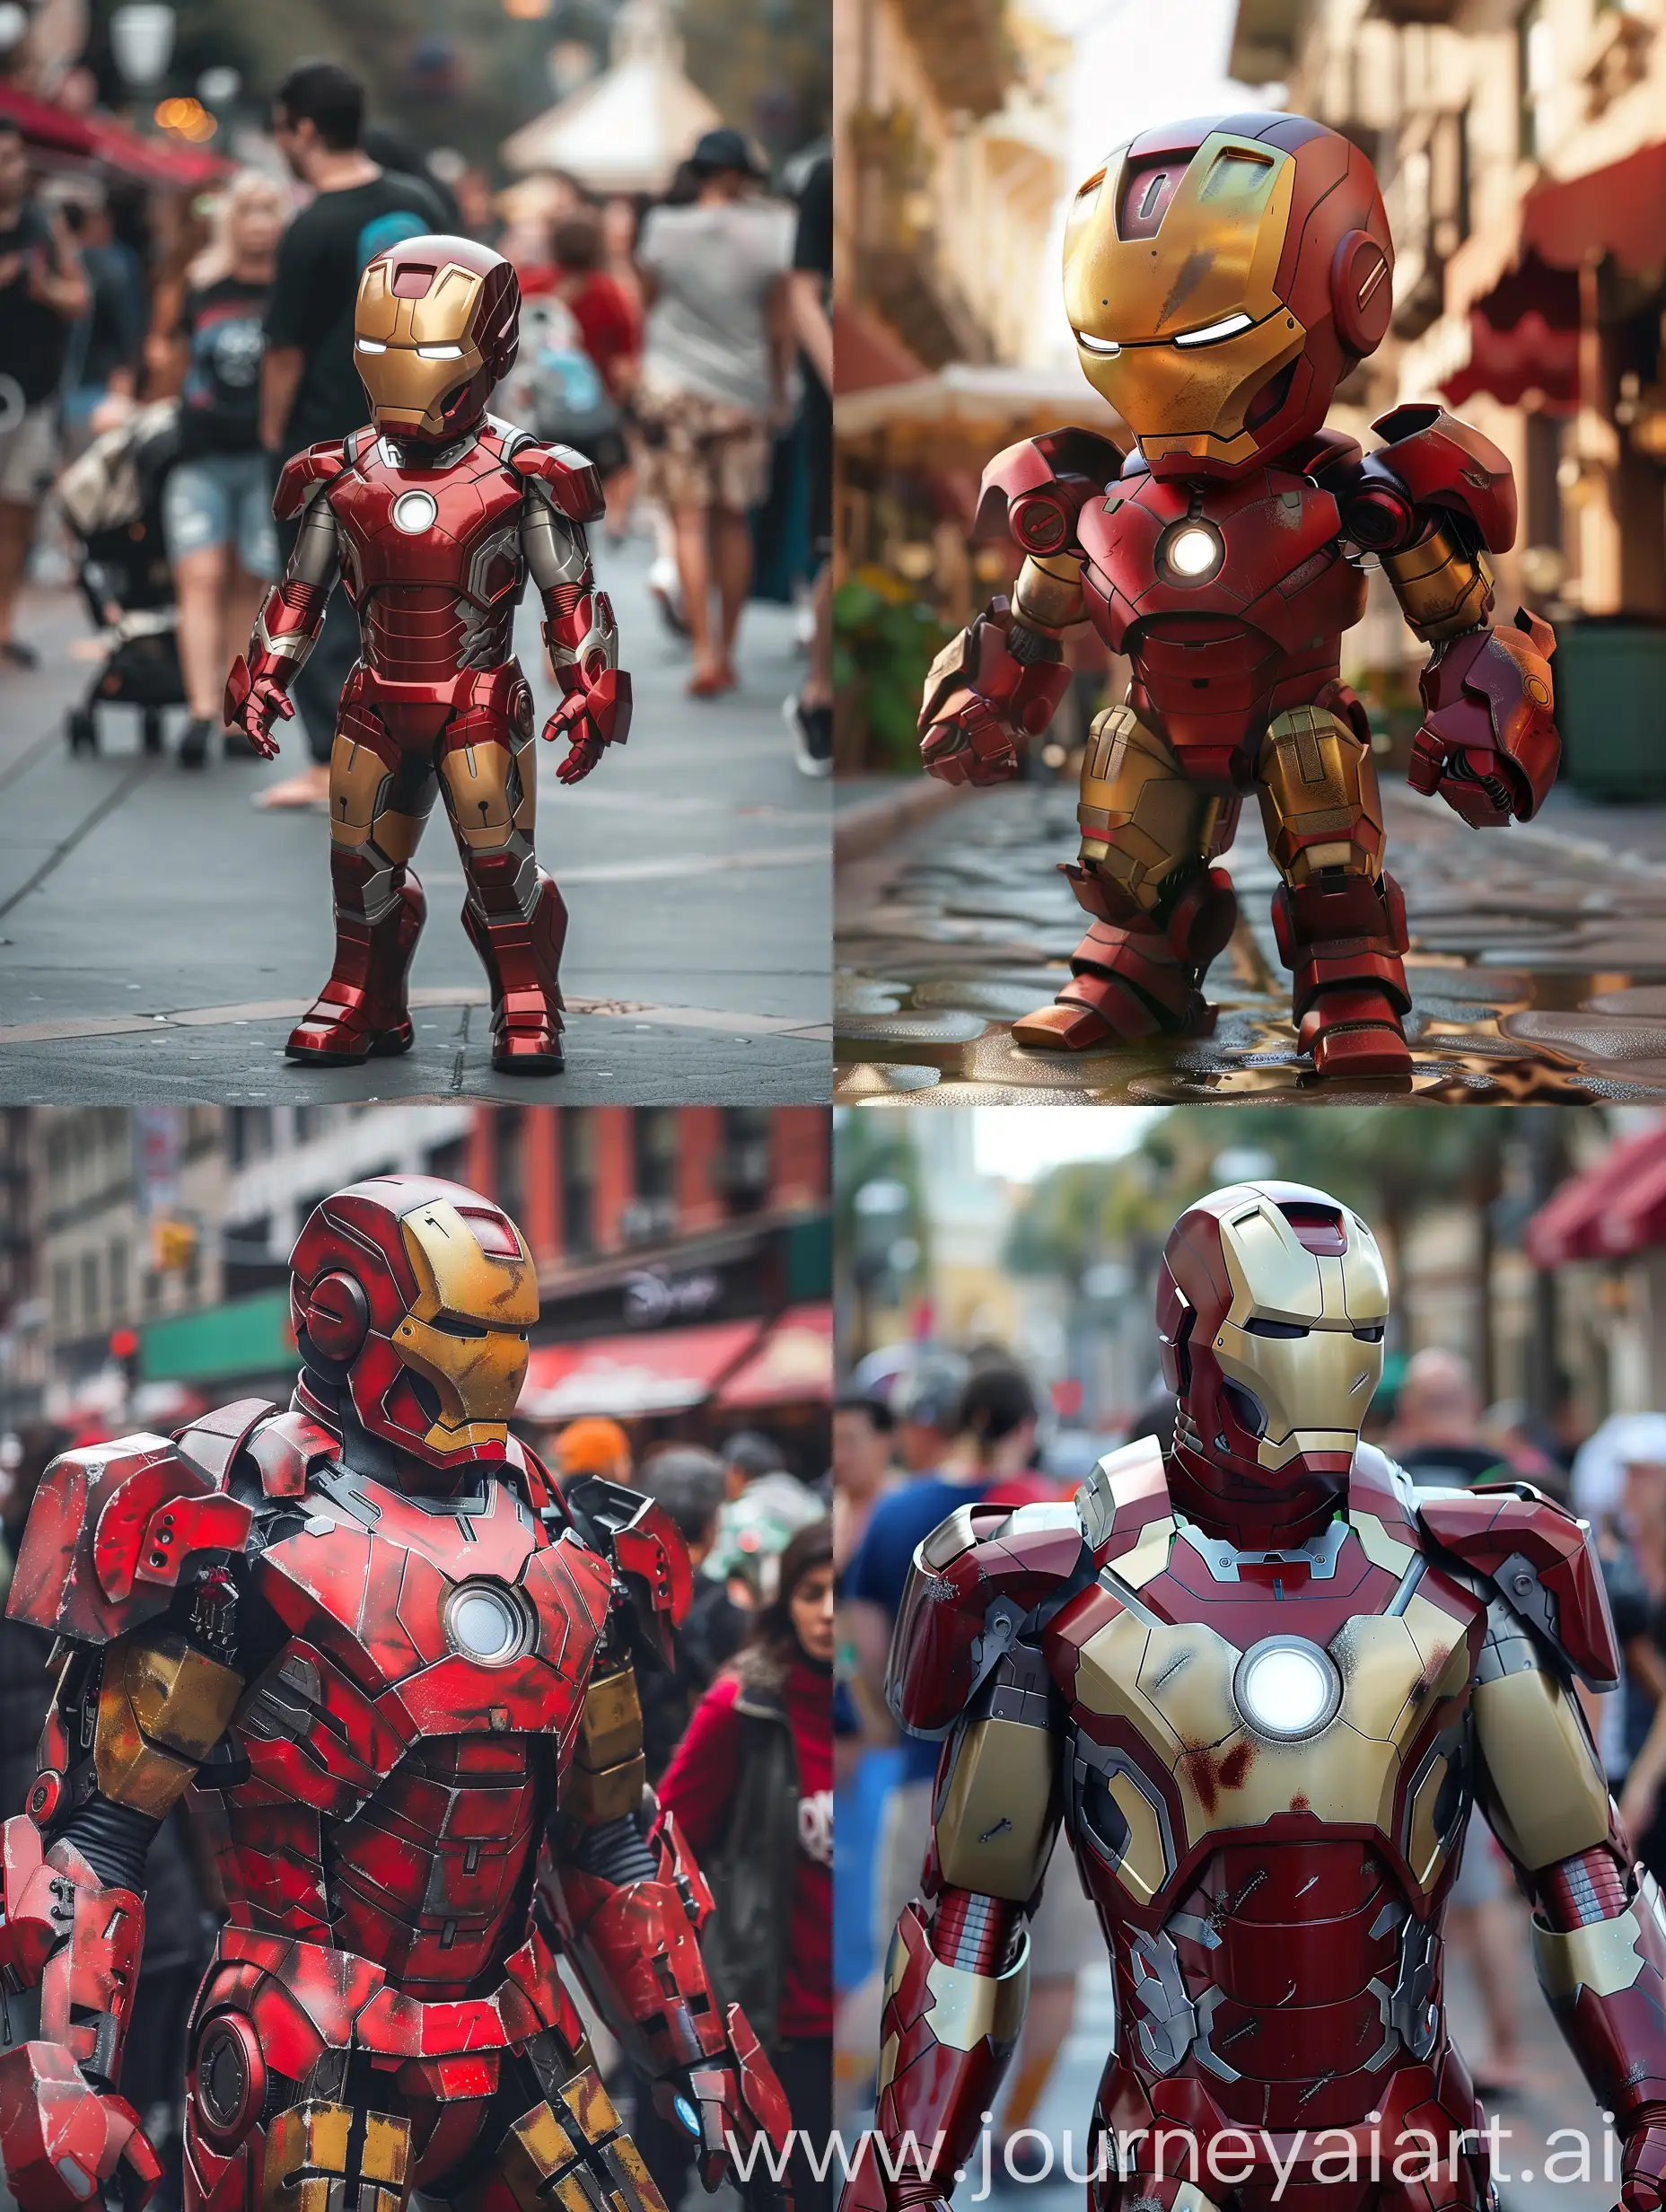 Ragdoll-Cat-Wearing-Iron-Man-Merchandise-in-a-DisneyStyle-Street-Scene